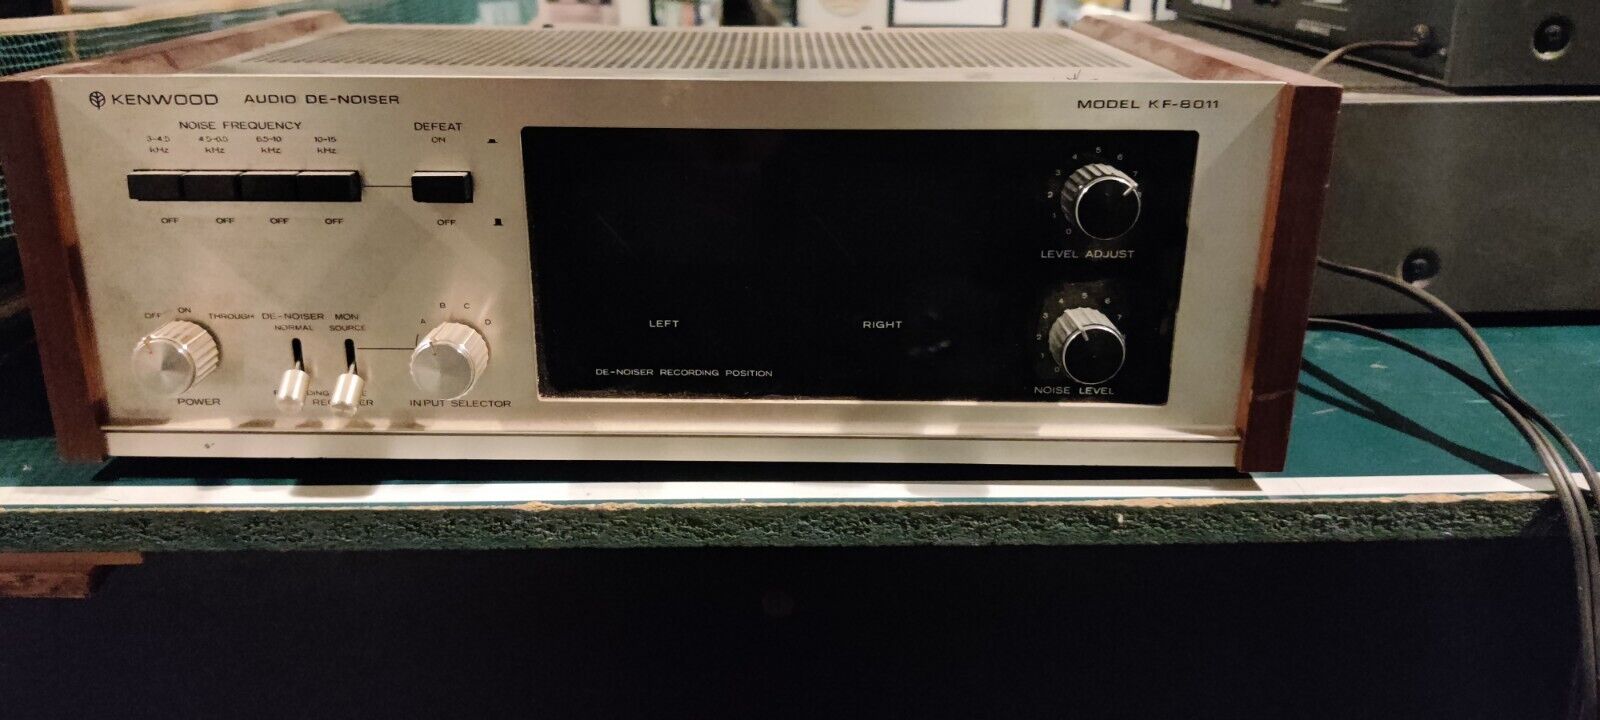 Kenwood Audio De-noiser.  Model. Kf-8011